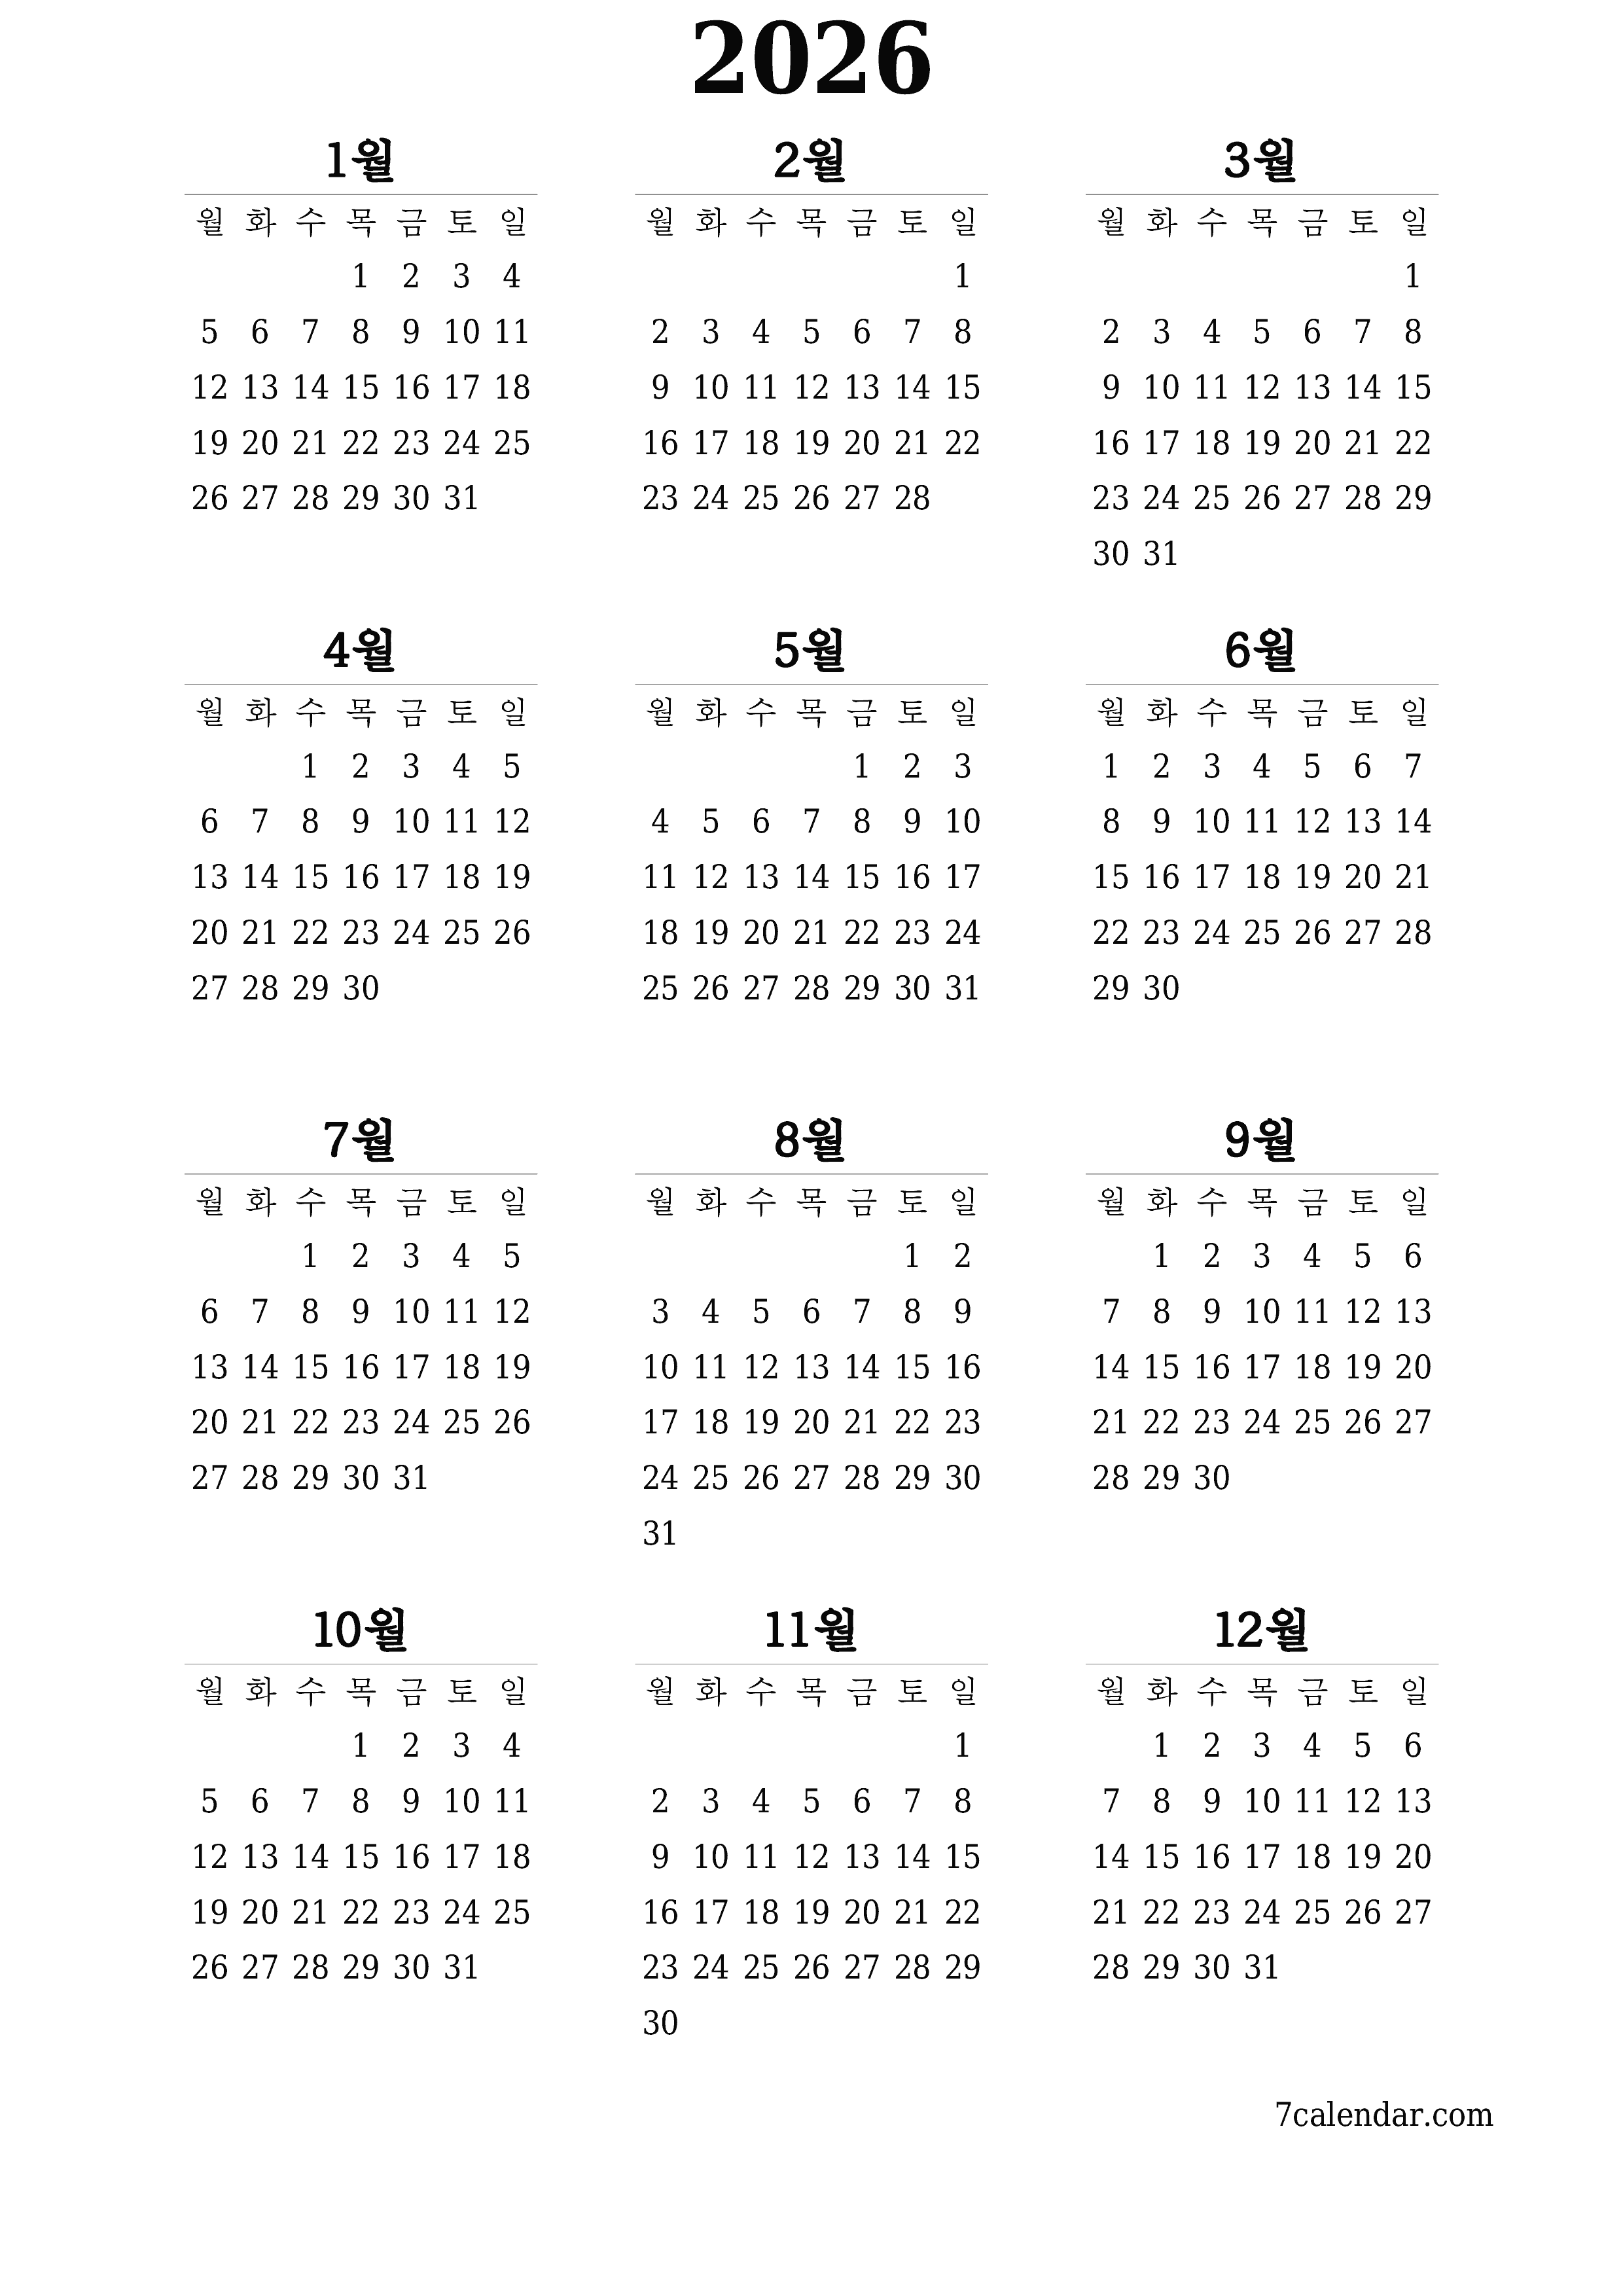 메모가있는 2026 년의 연간 플래너 캘린더 비우기, 저장하고 PDF PNG Korean-7calendar.com으로 인쇄